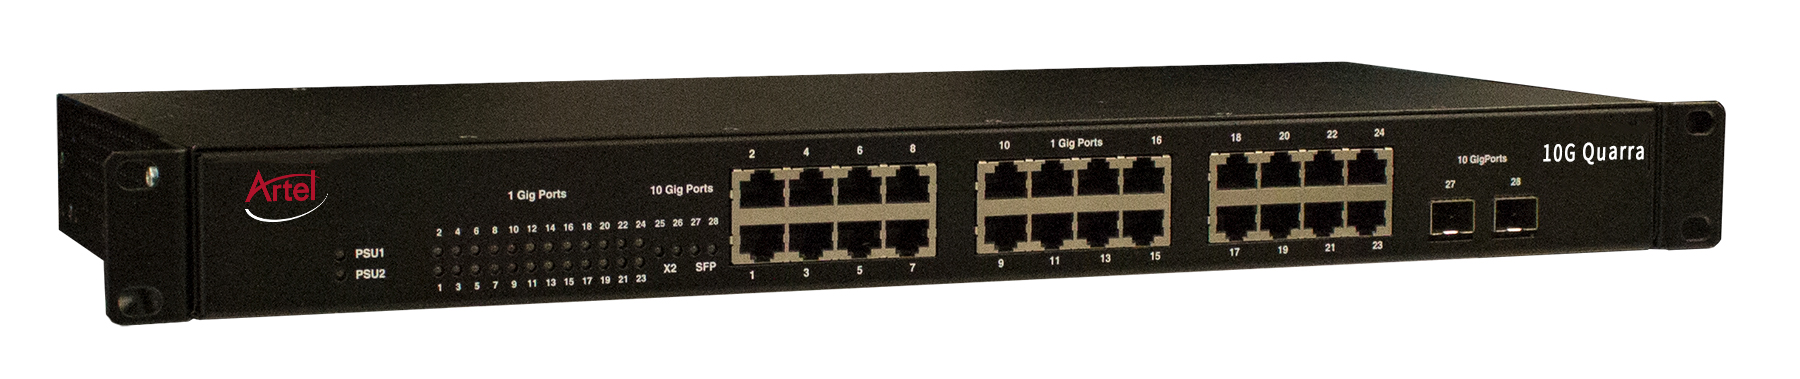 Quarra 10G PTP Ethernet Switch Left med